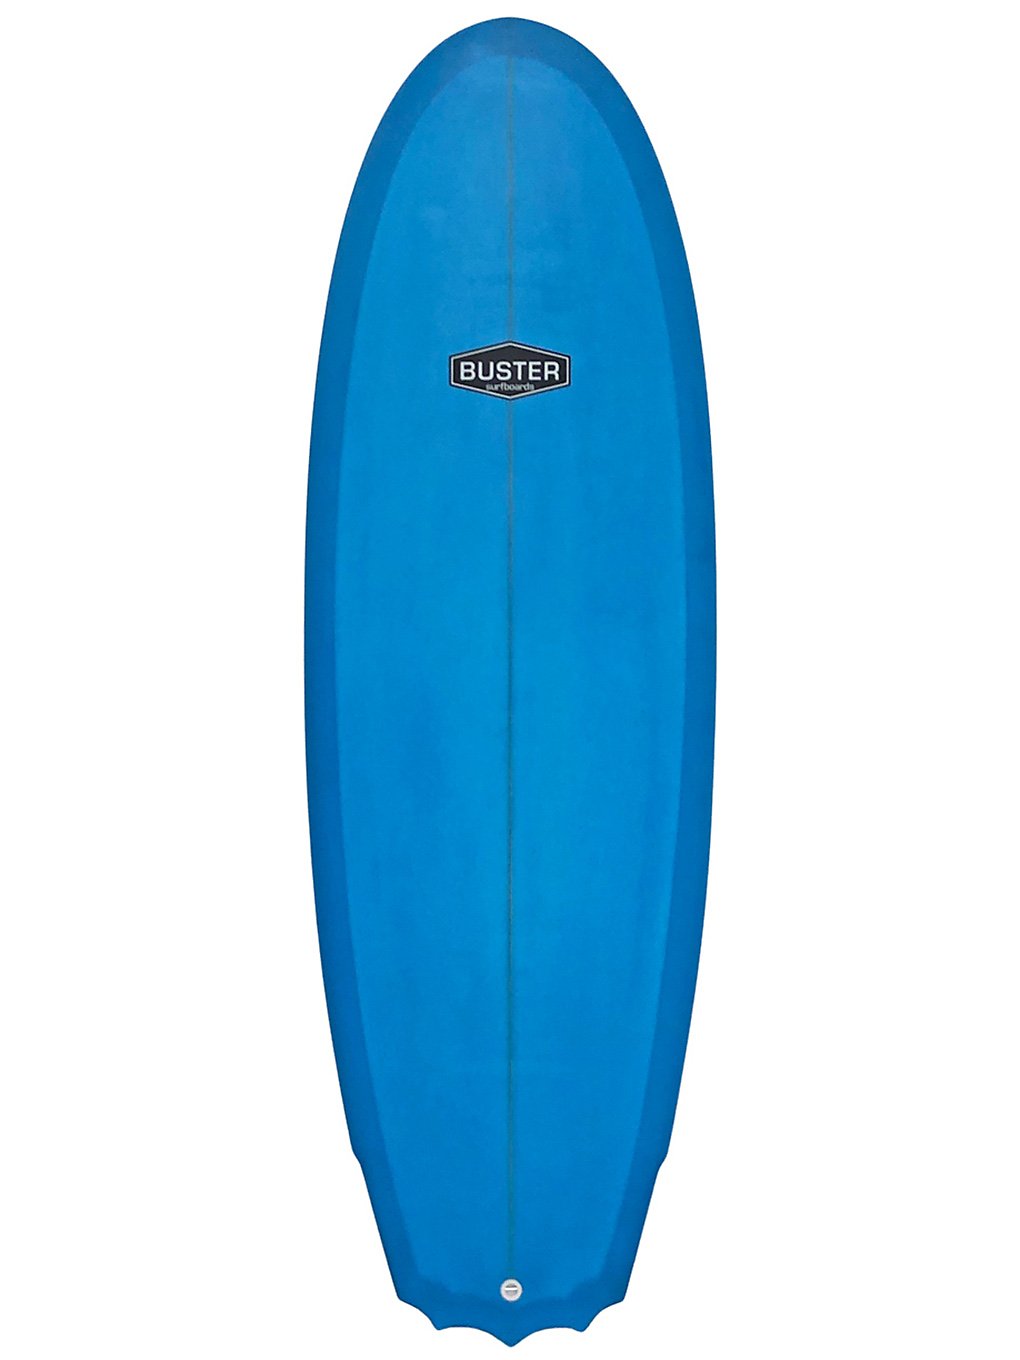 Buster 5'8 Stubby Surfboard bleu